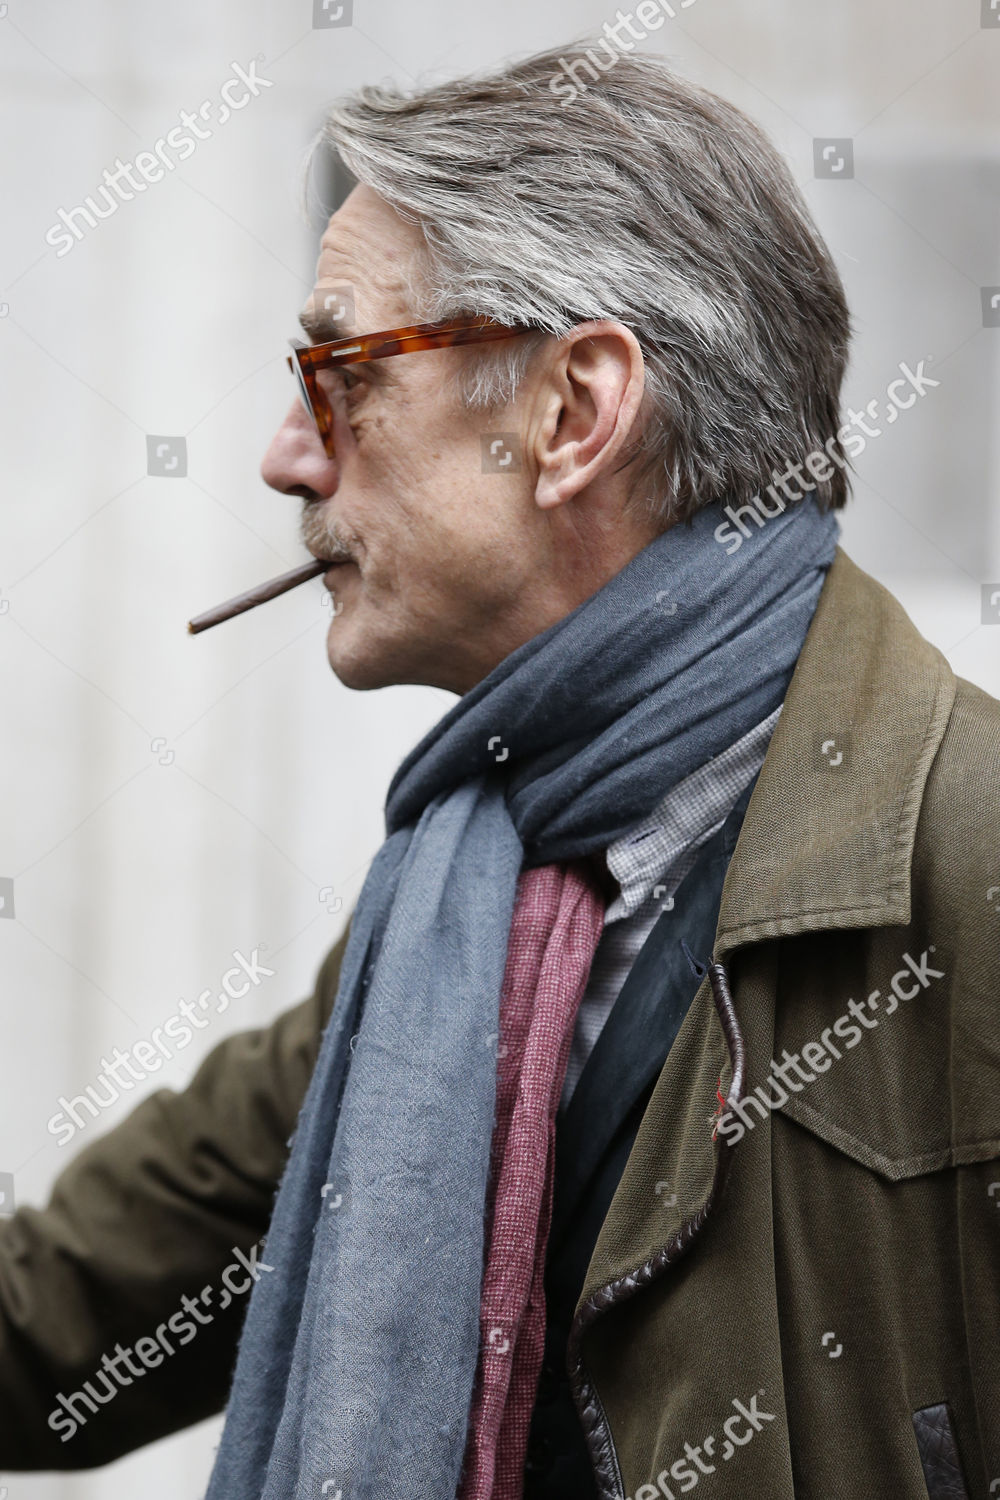 Jeremy Irons raucht einer Zigarette (oder Cannabis)
